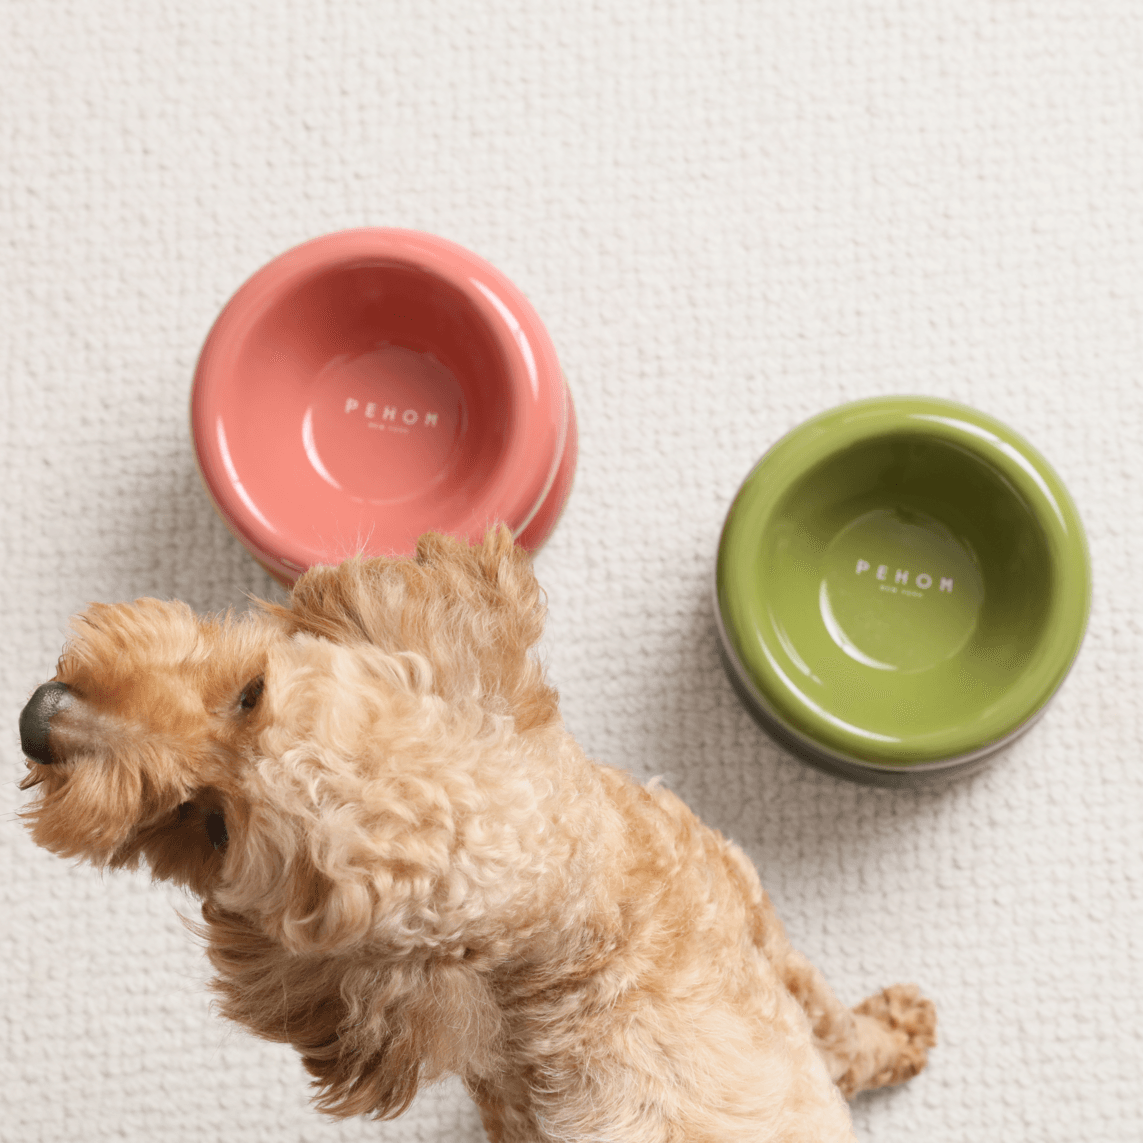 Soufflé Pet Bowl - Rose Pink - Rocky & Maggie's Pet Boutique and Salon